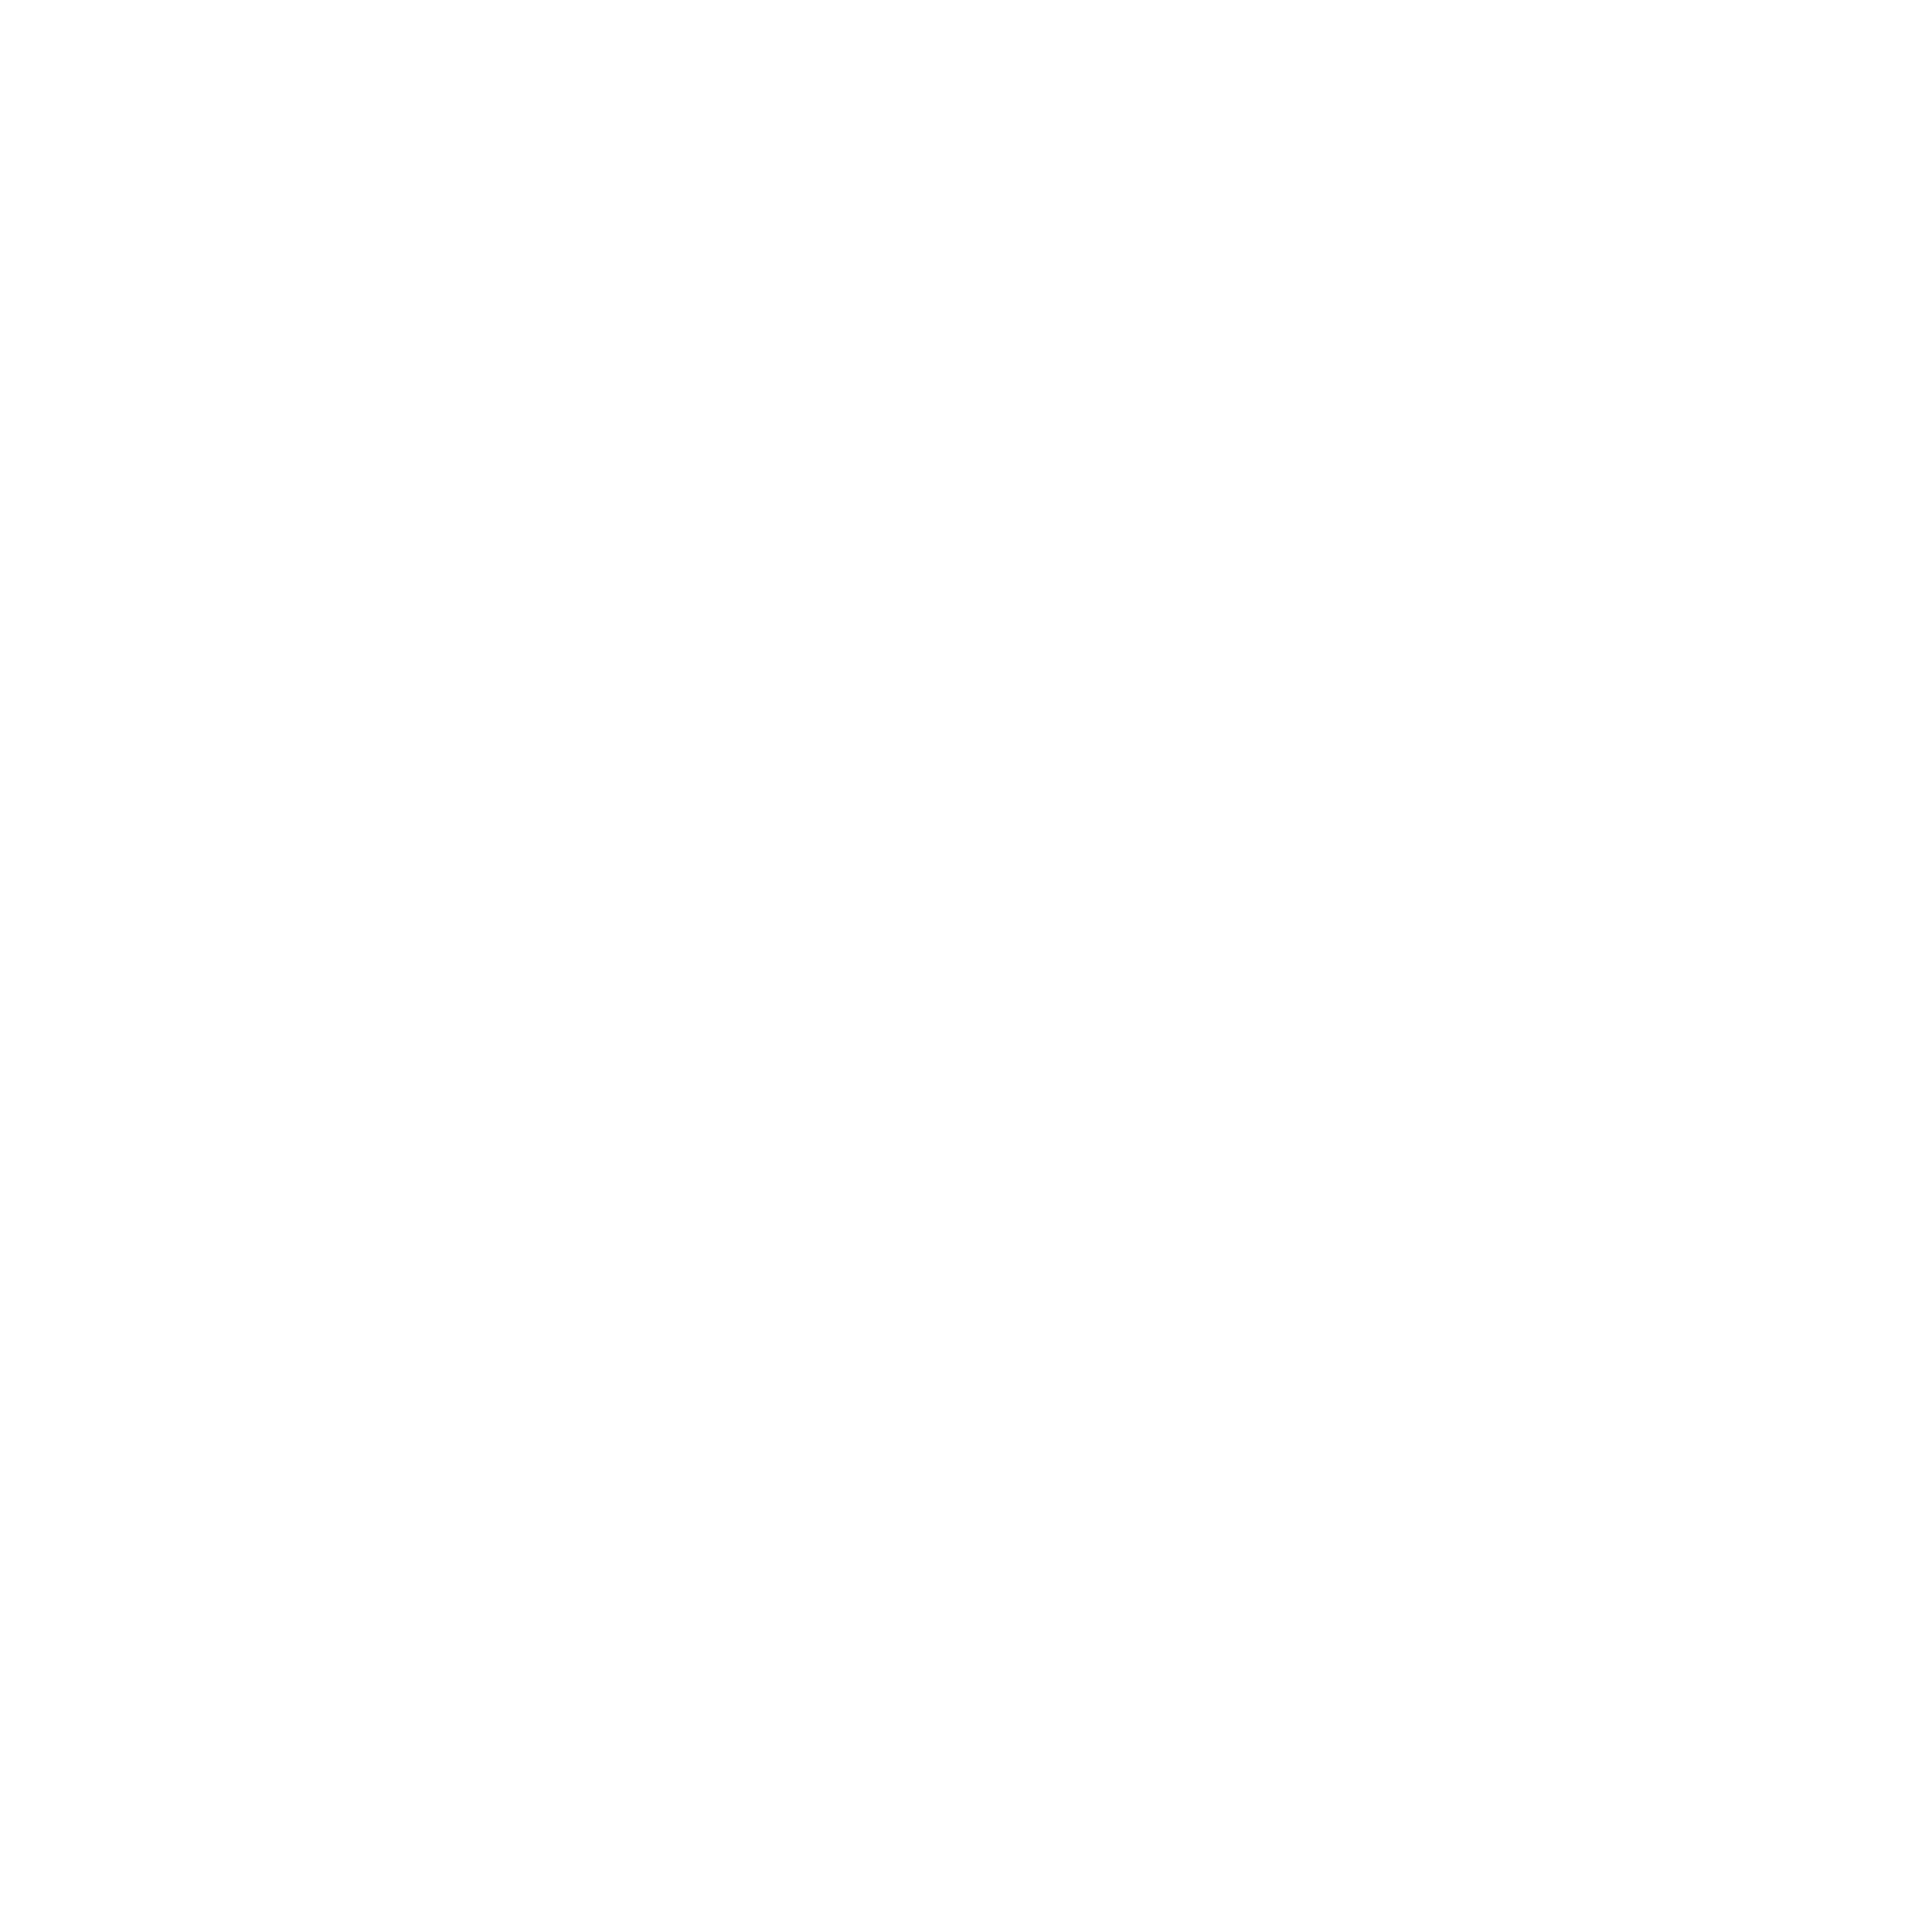 LEXUS-1.png